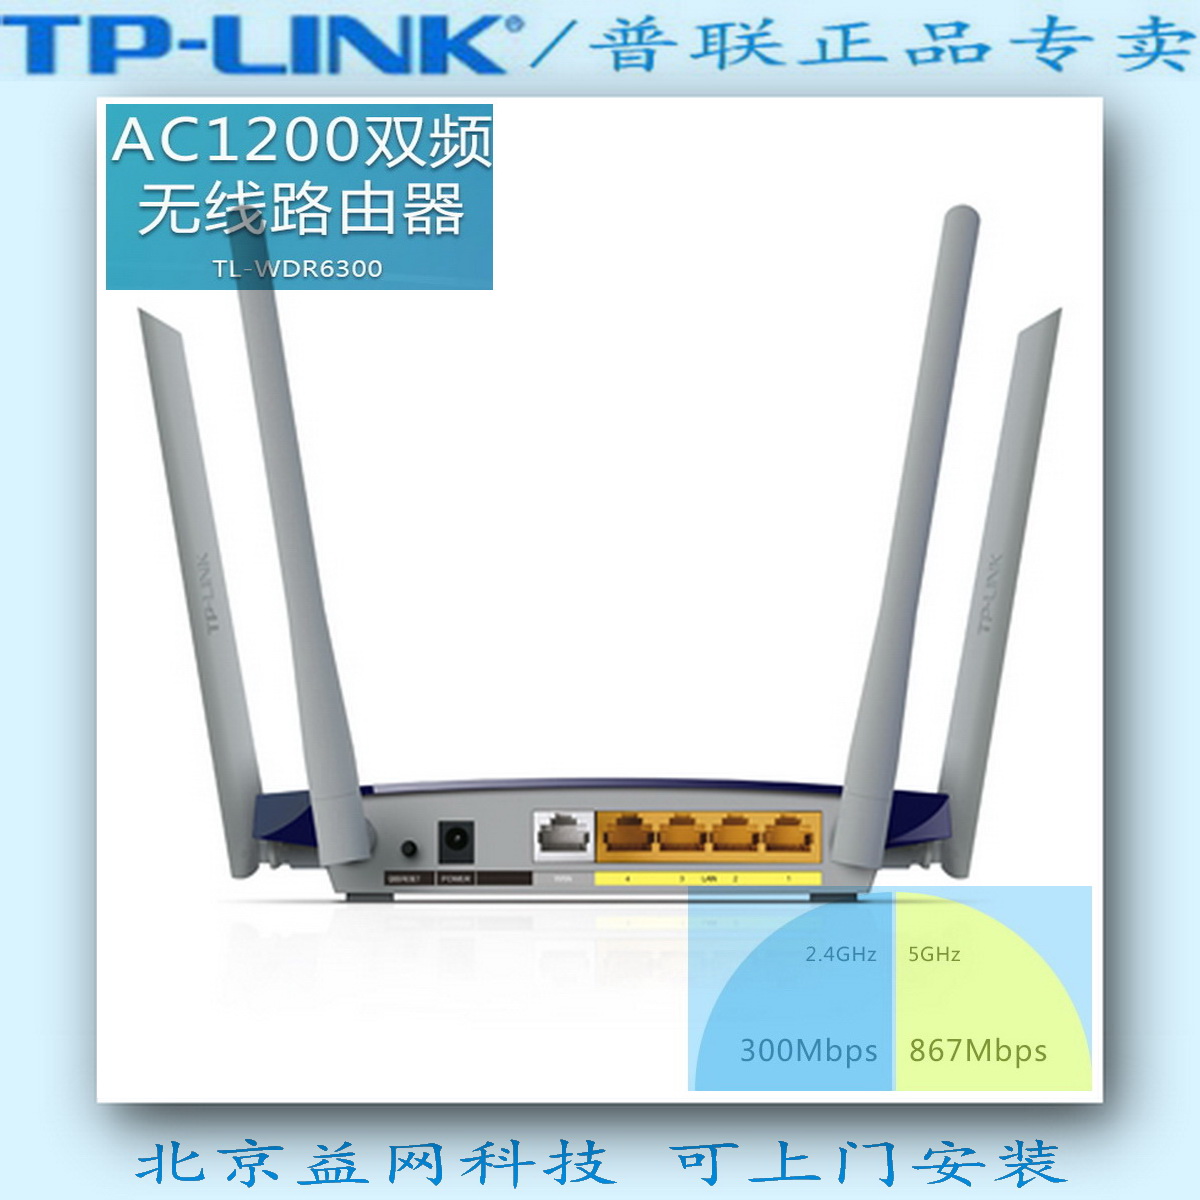 包邮顺丰 送2米网线 TP-LINK TL-WDR6300 AC